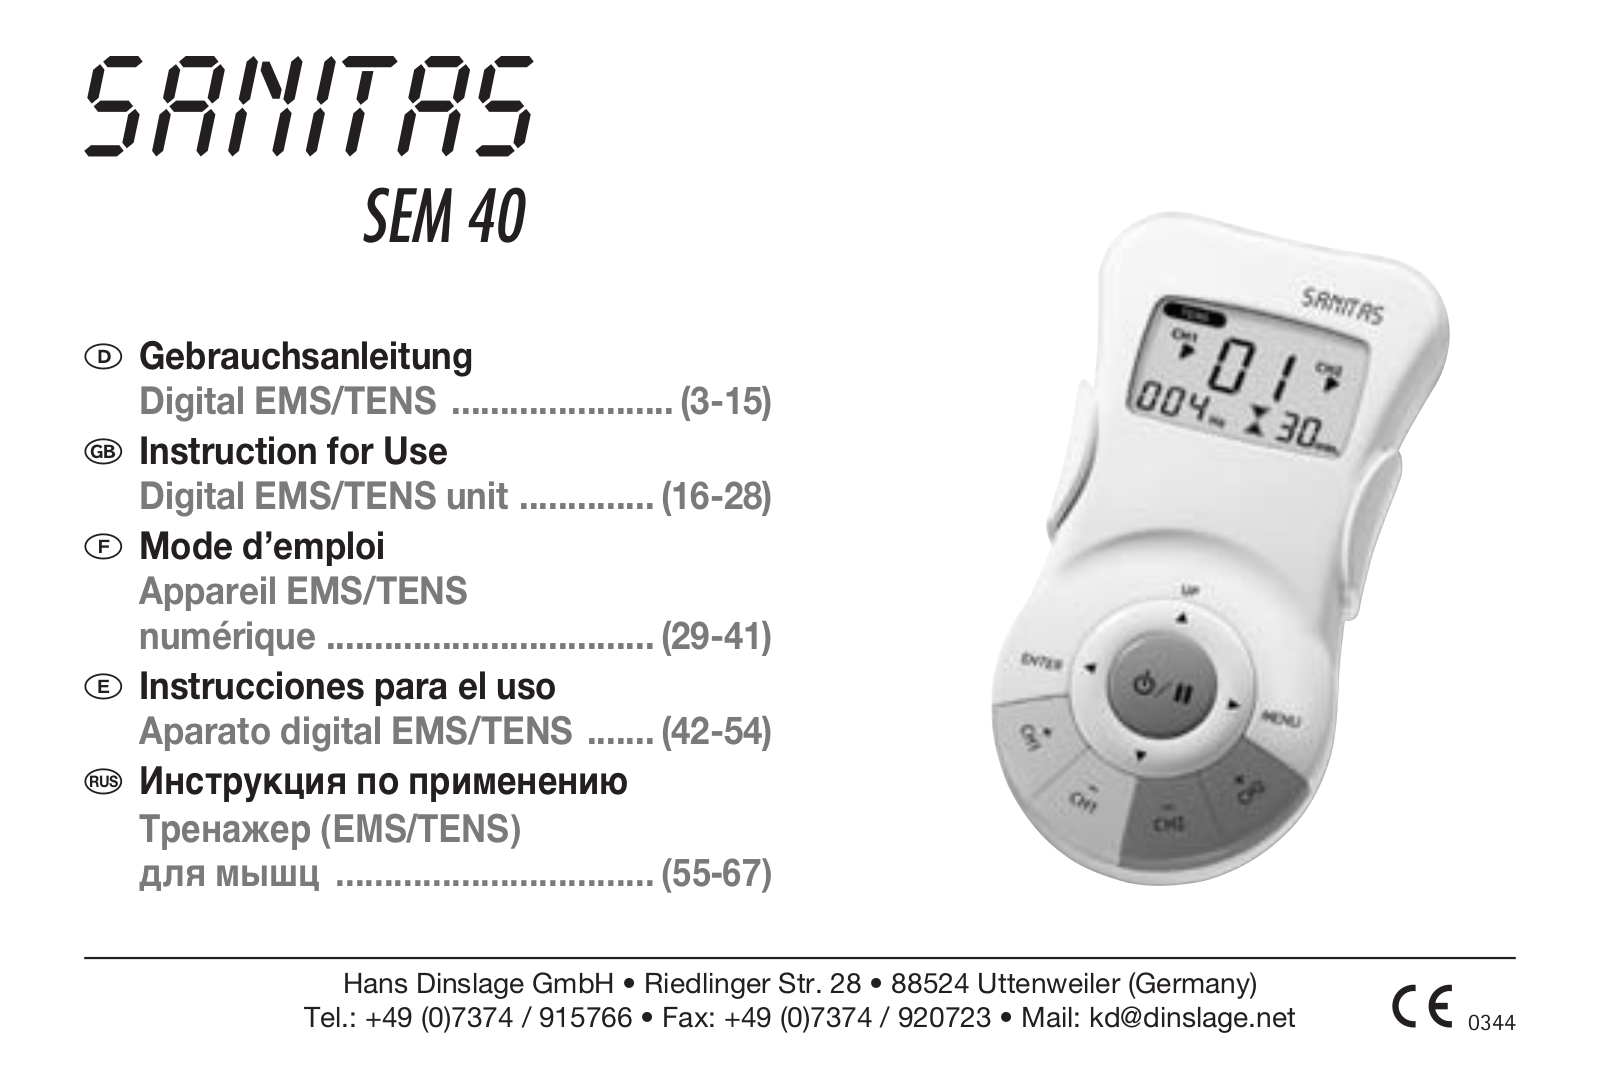 SANITAS DIGITAL EMS TENS User Manual